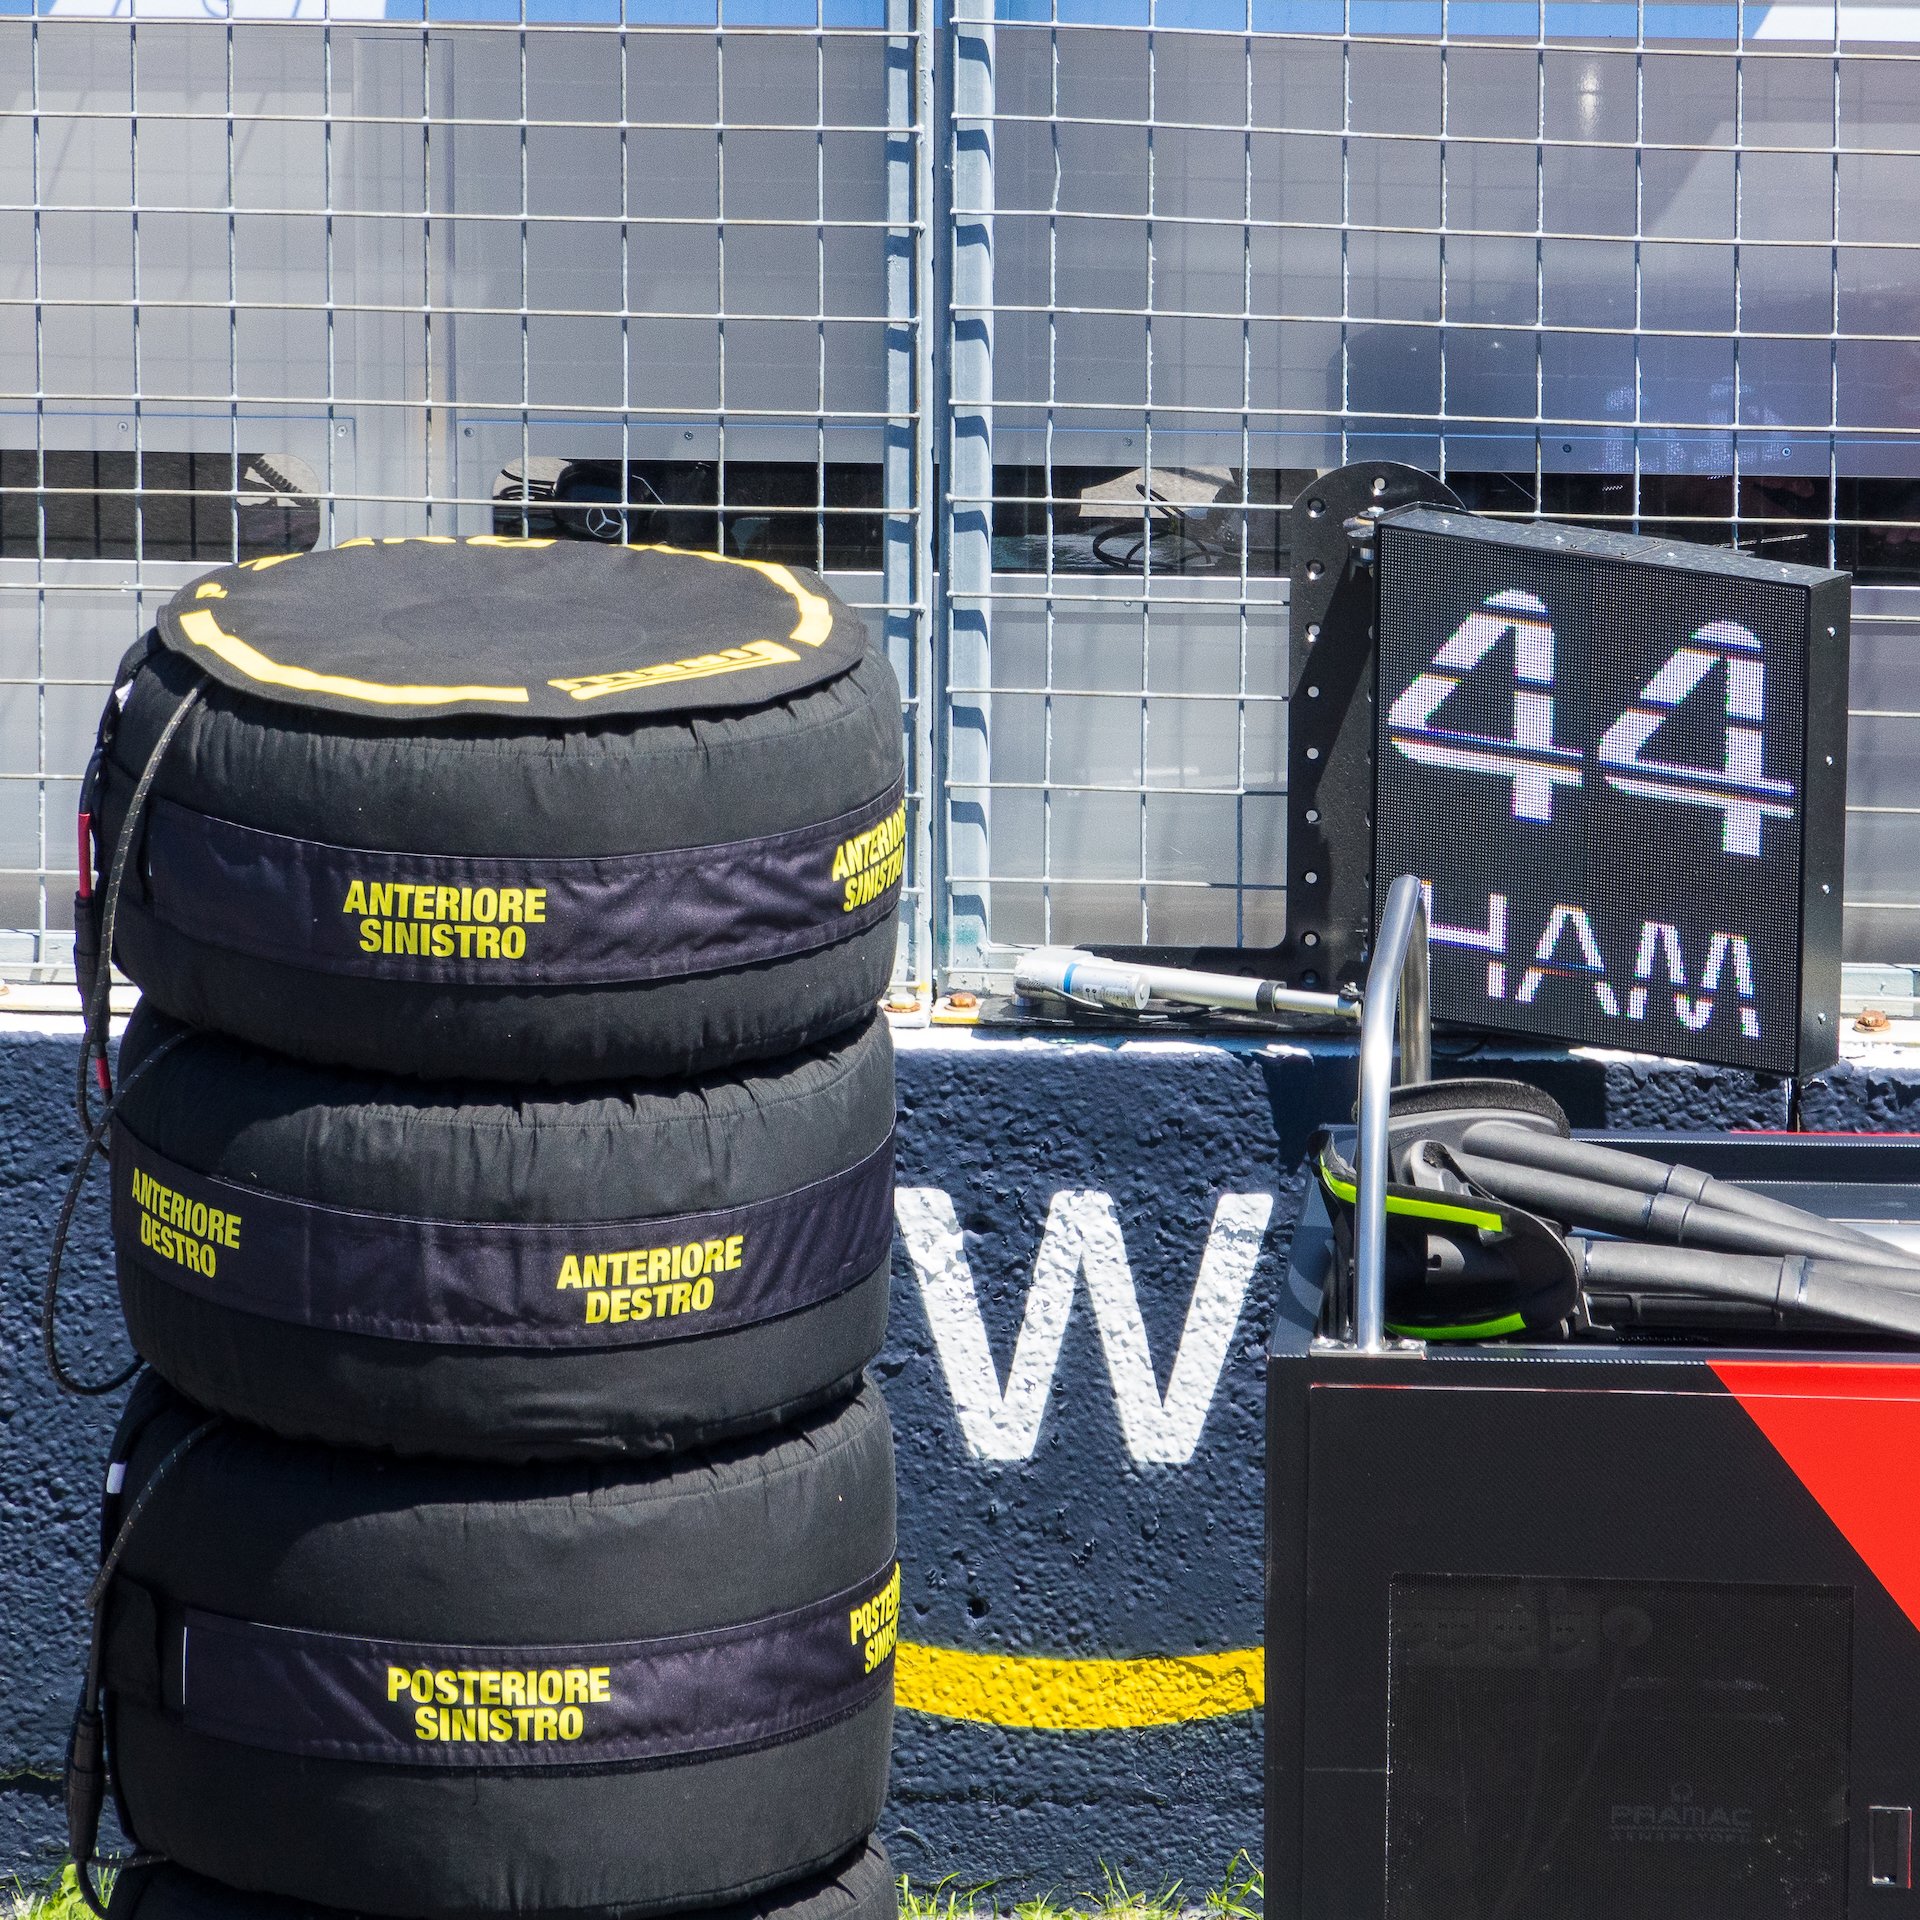 Hamilton's tires ready to go.